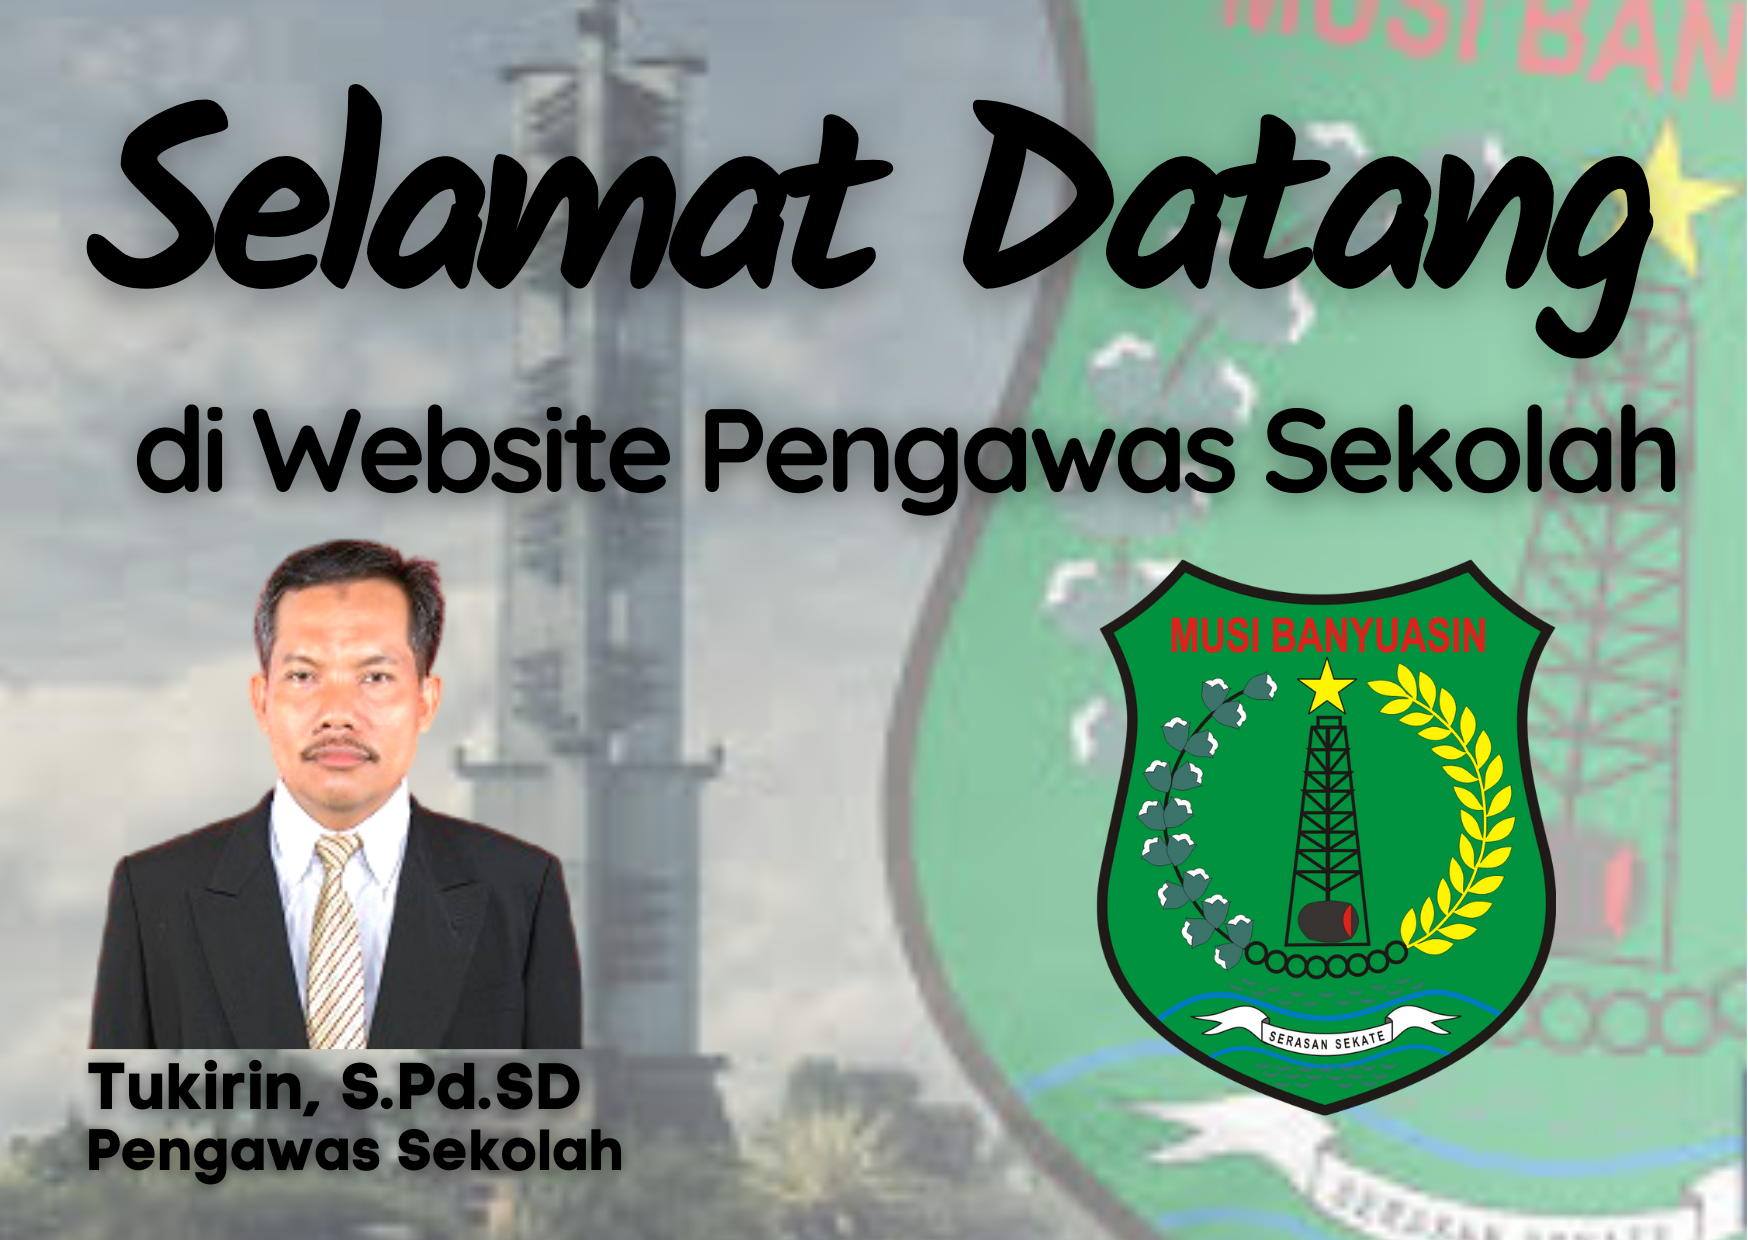 Selamat Datang di Blog Website Tukirin, S.Pd.SD